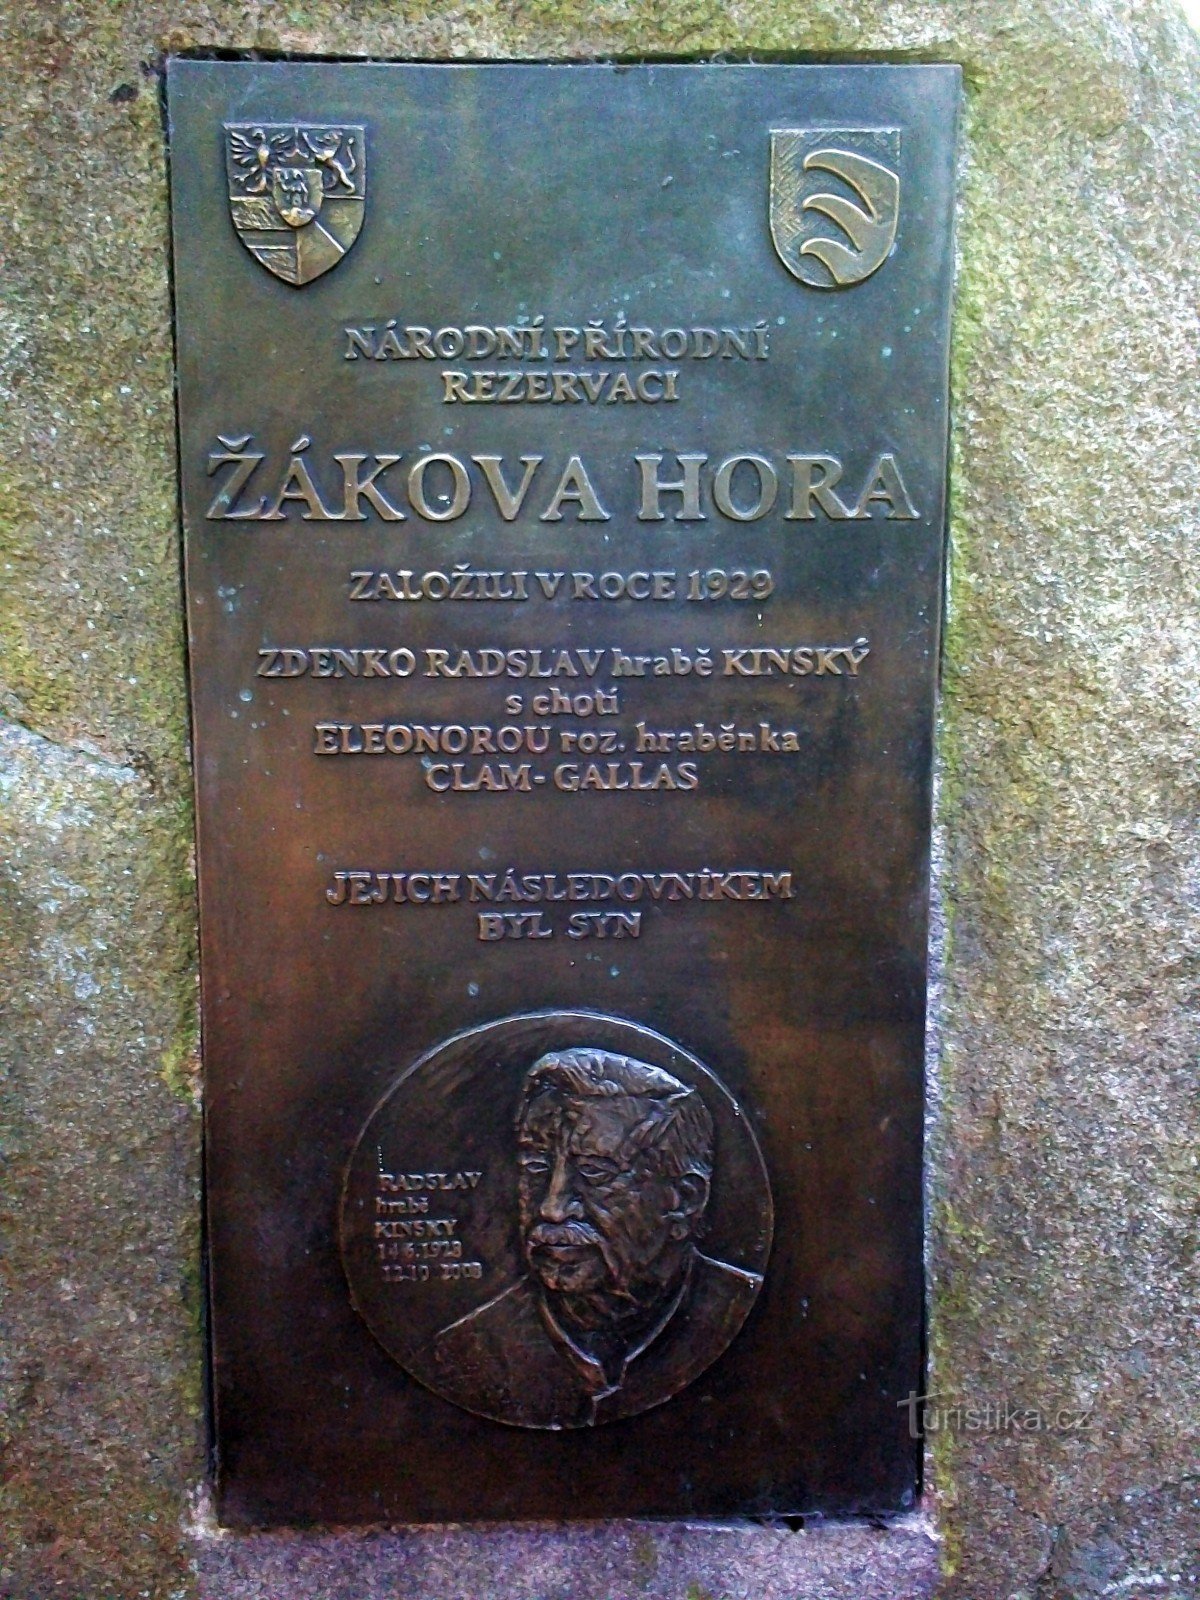 A plaque on the monument under Žáková Hora